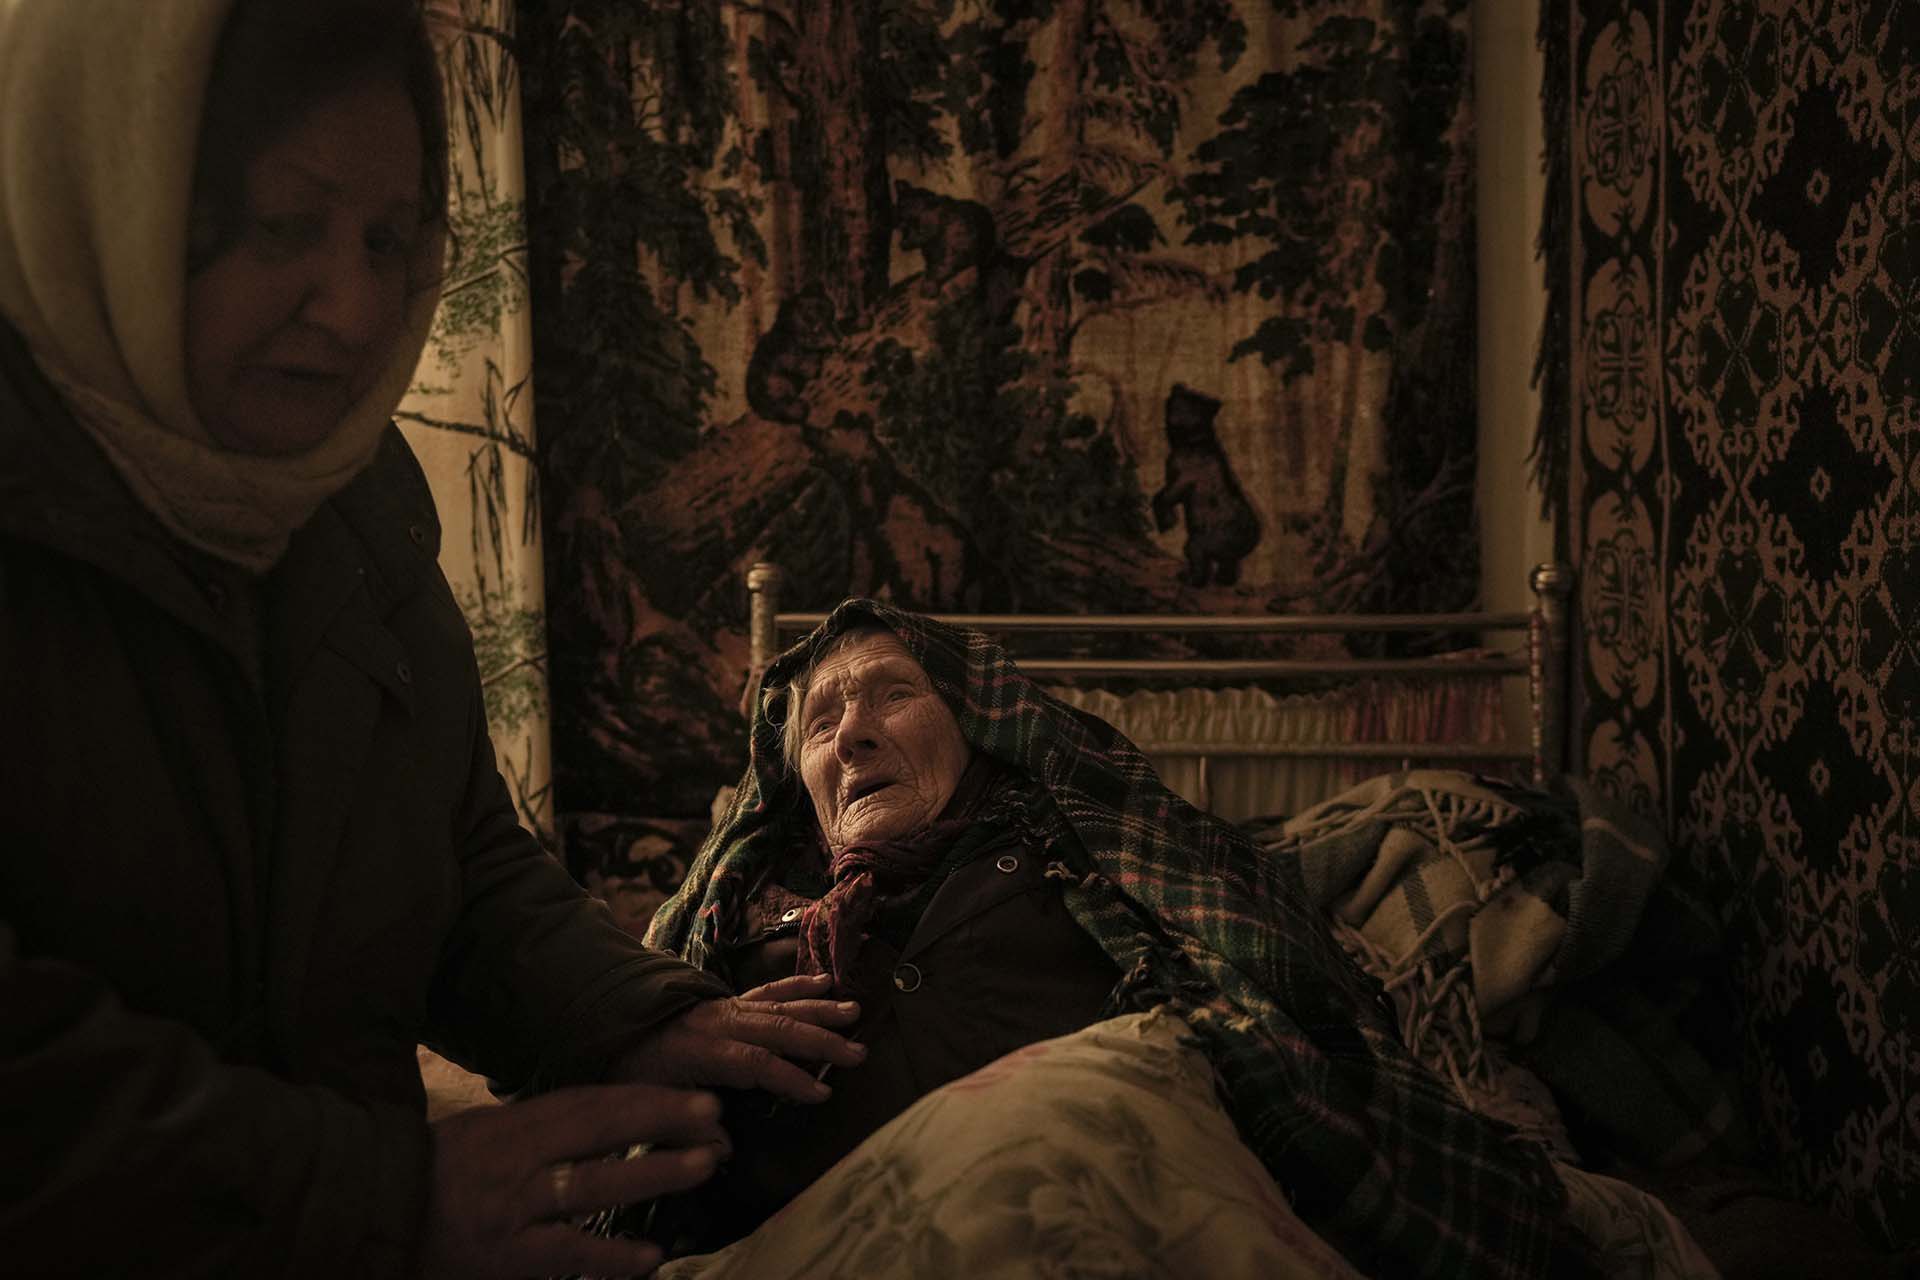 Los civiles siguen sufriendo el combate. Motria Oleksiienko, una anciana de 99 años, en una habitación sin calefaccción en Andriivka.